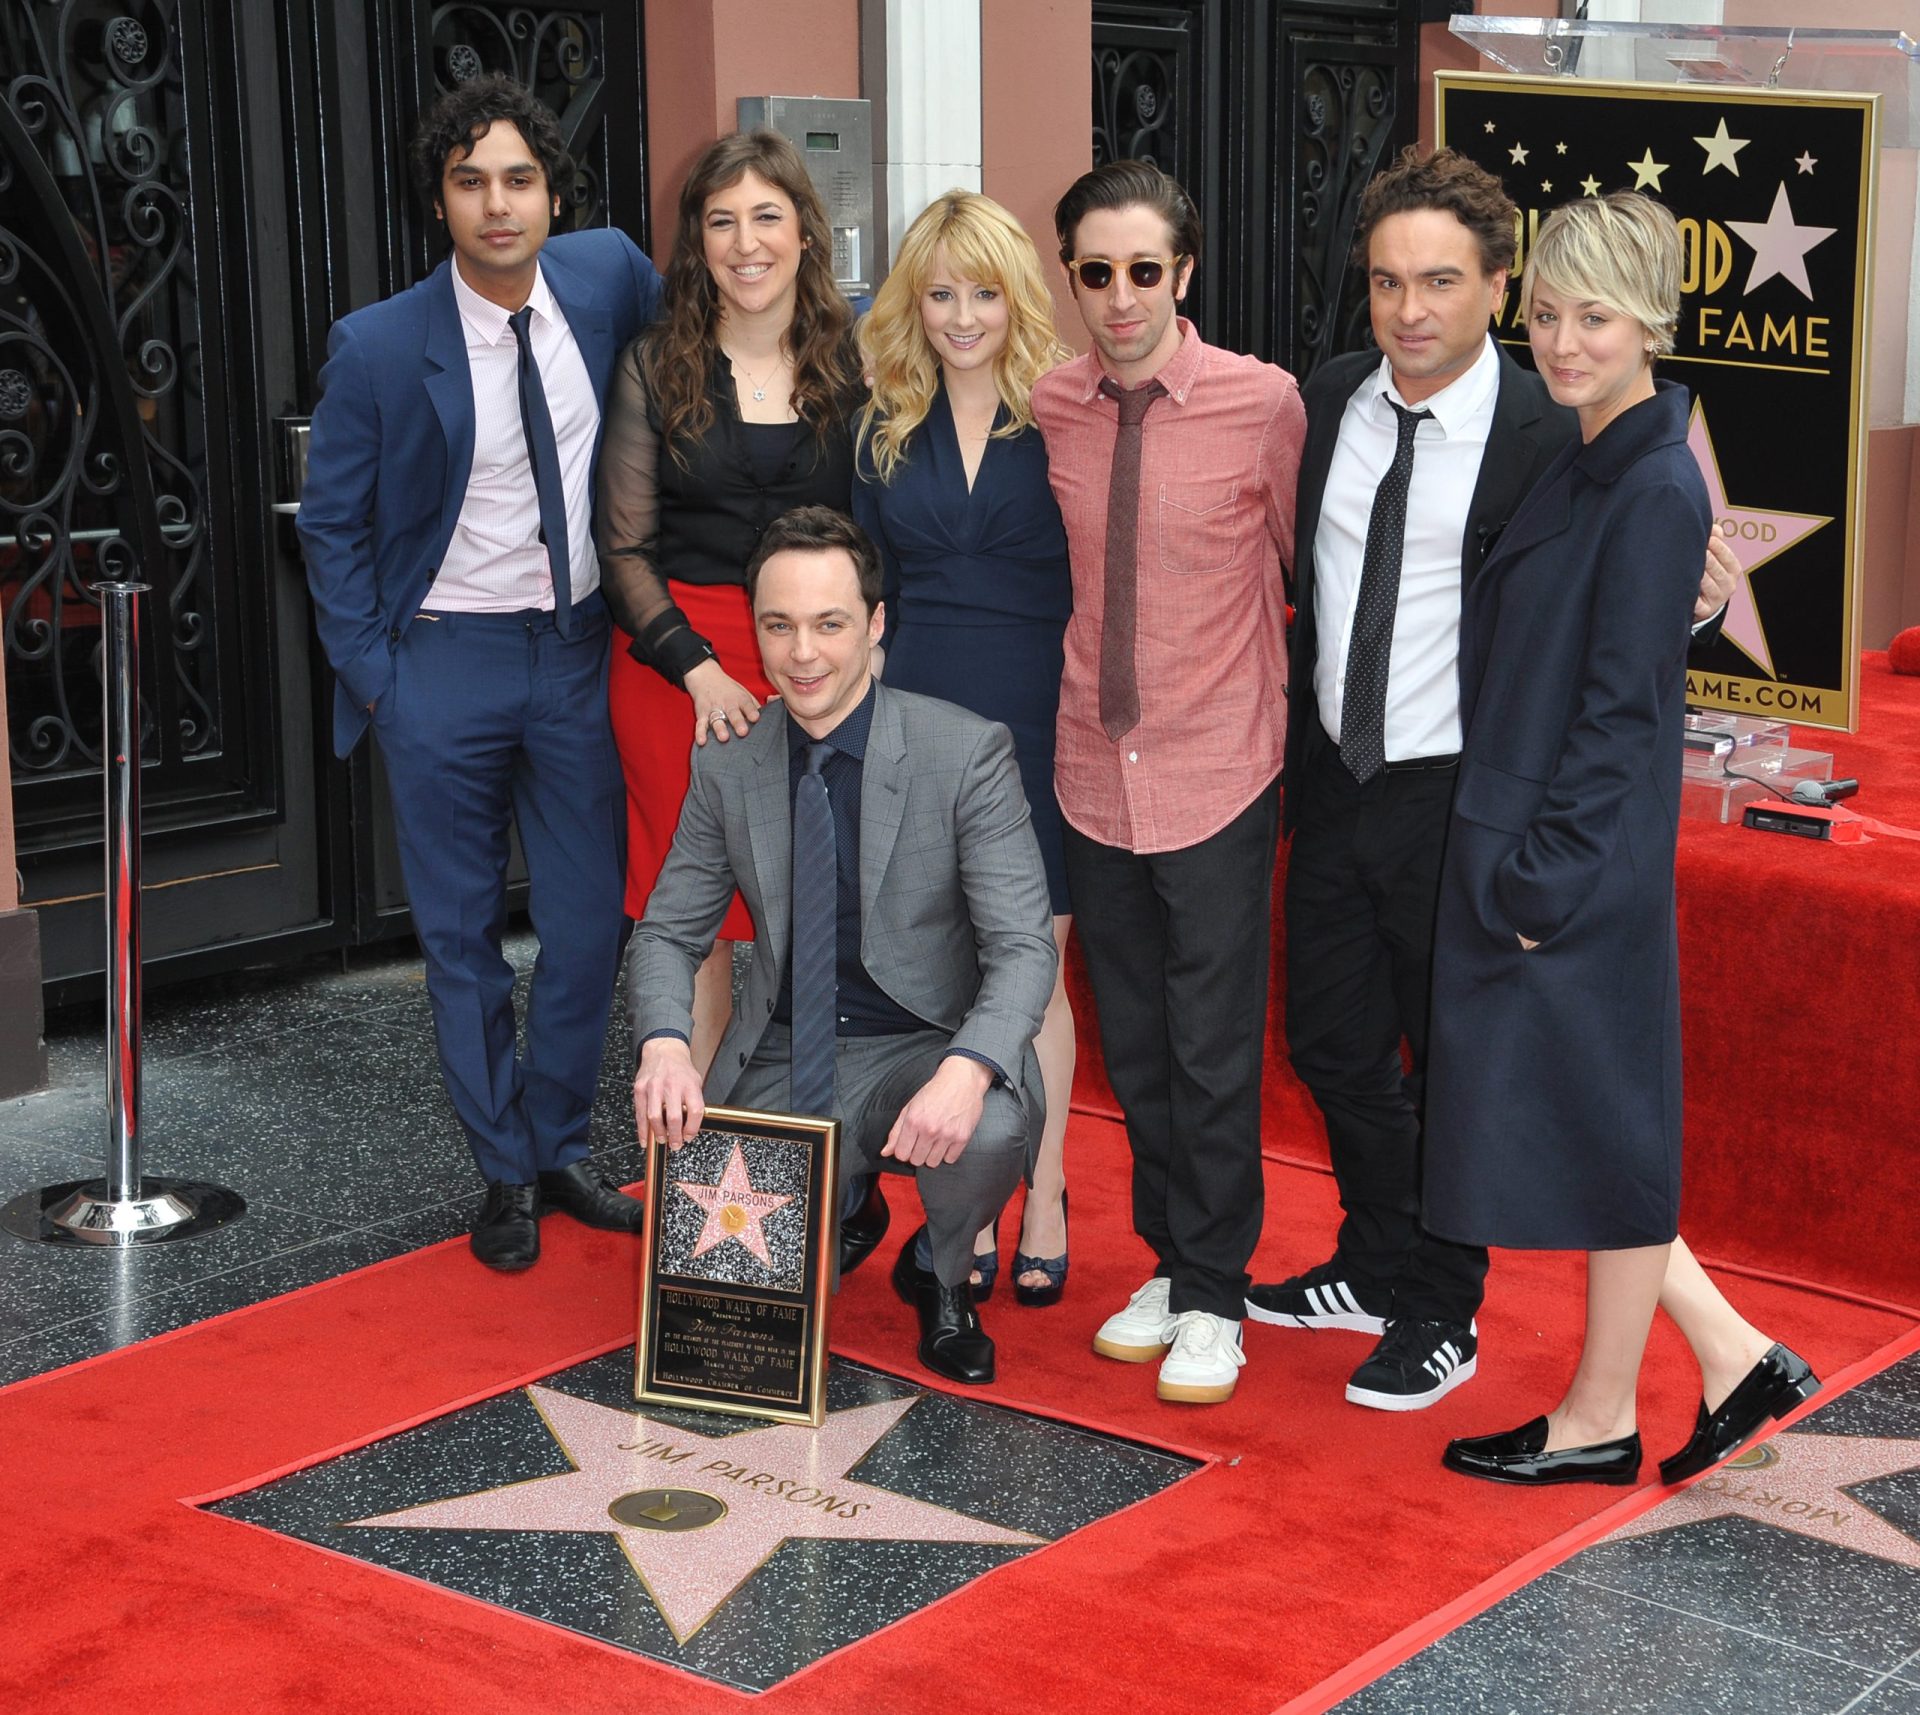 Atores de “Big Bang Theory” aceitam baixar o salário para que o resto do elenco ganhe mais